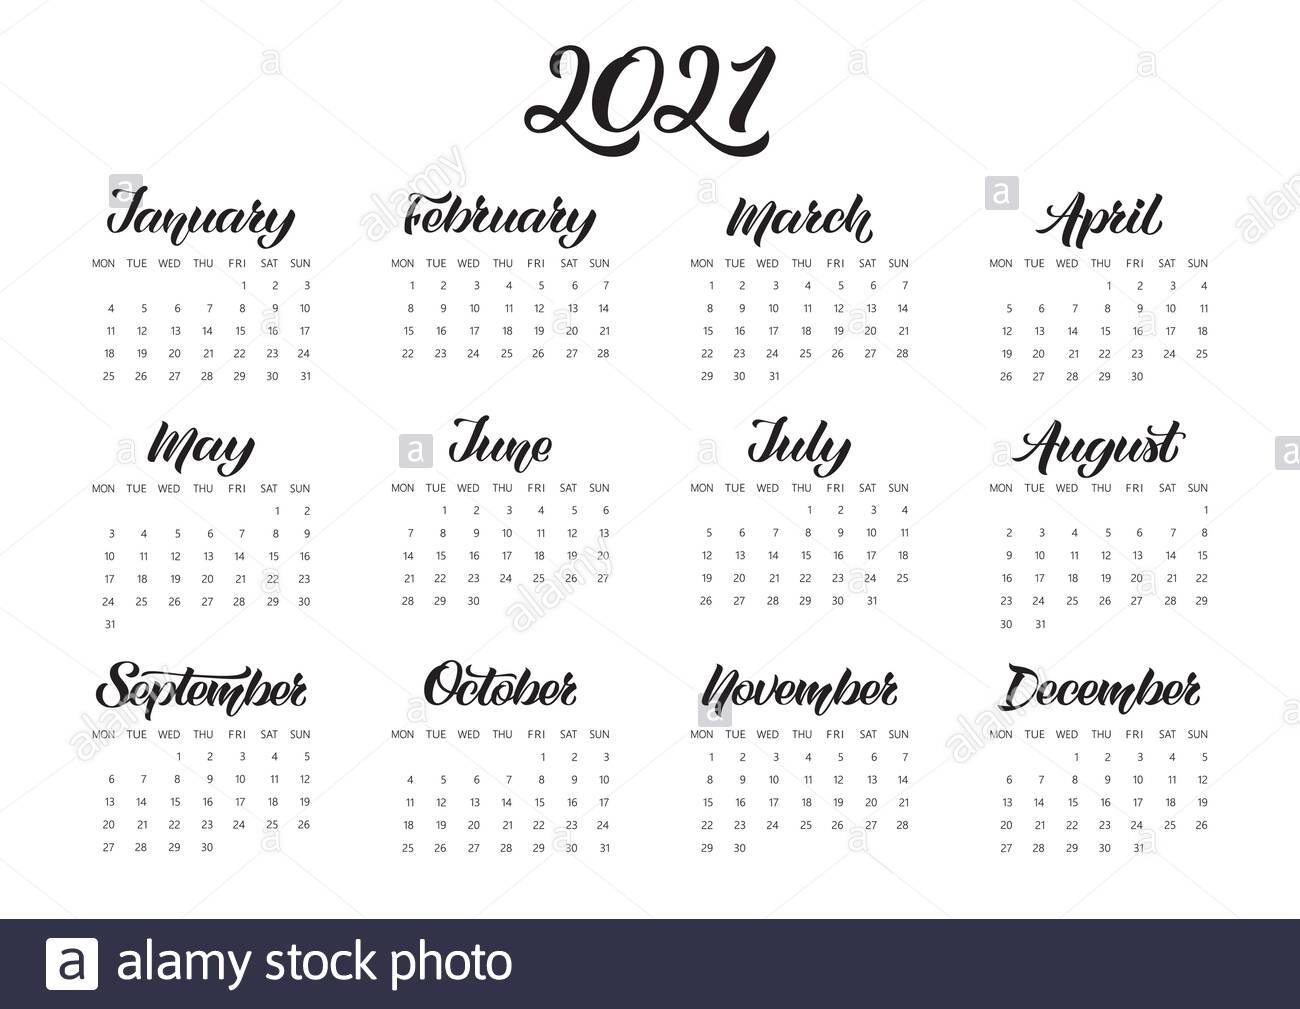 Catch 12Th September 2021 Julian Date